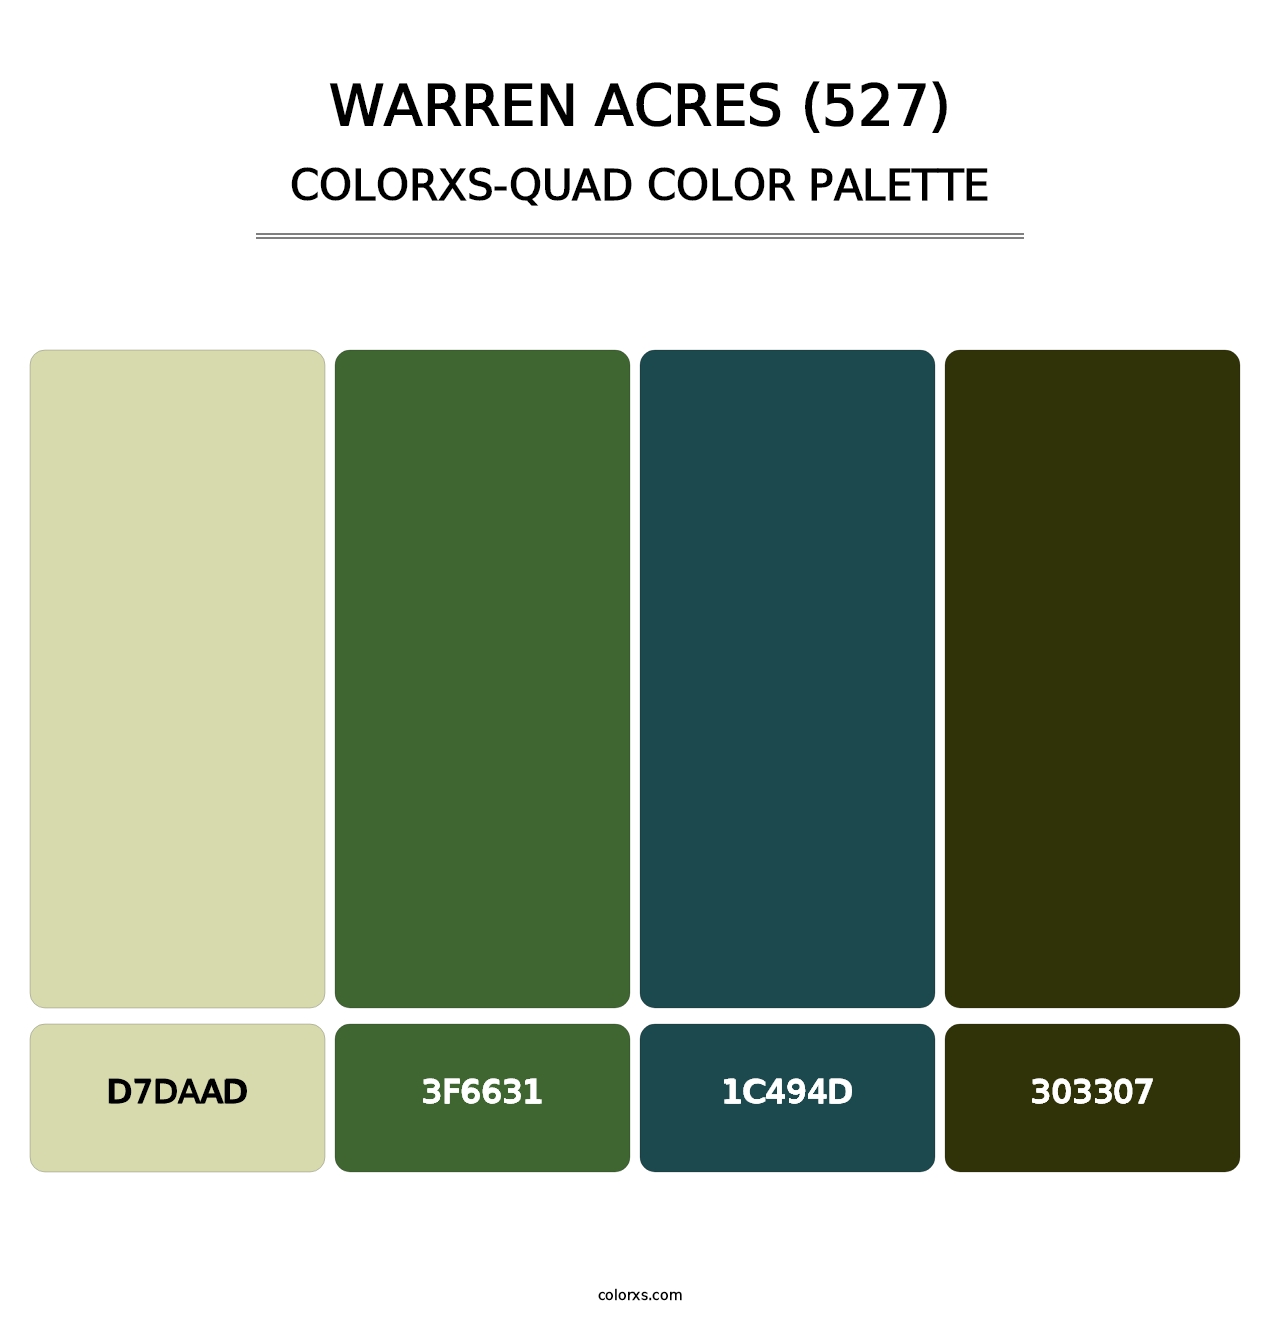 Warren Acres (527) - Colorxs Quad Palette